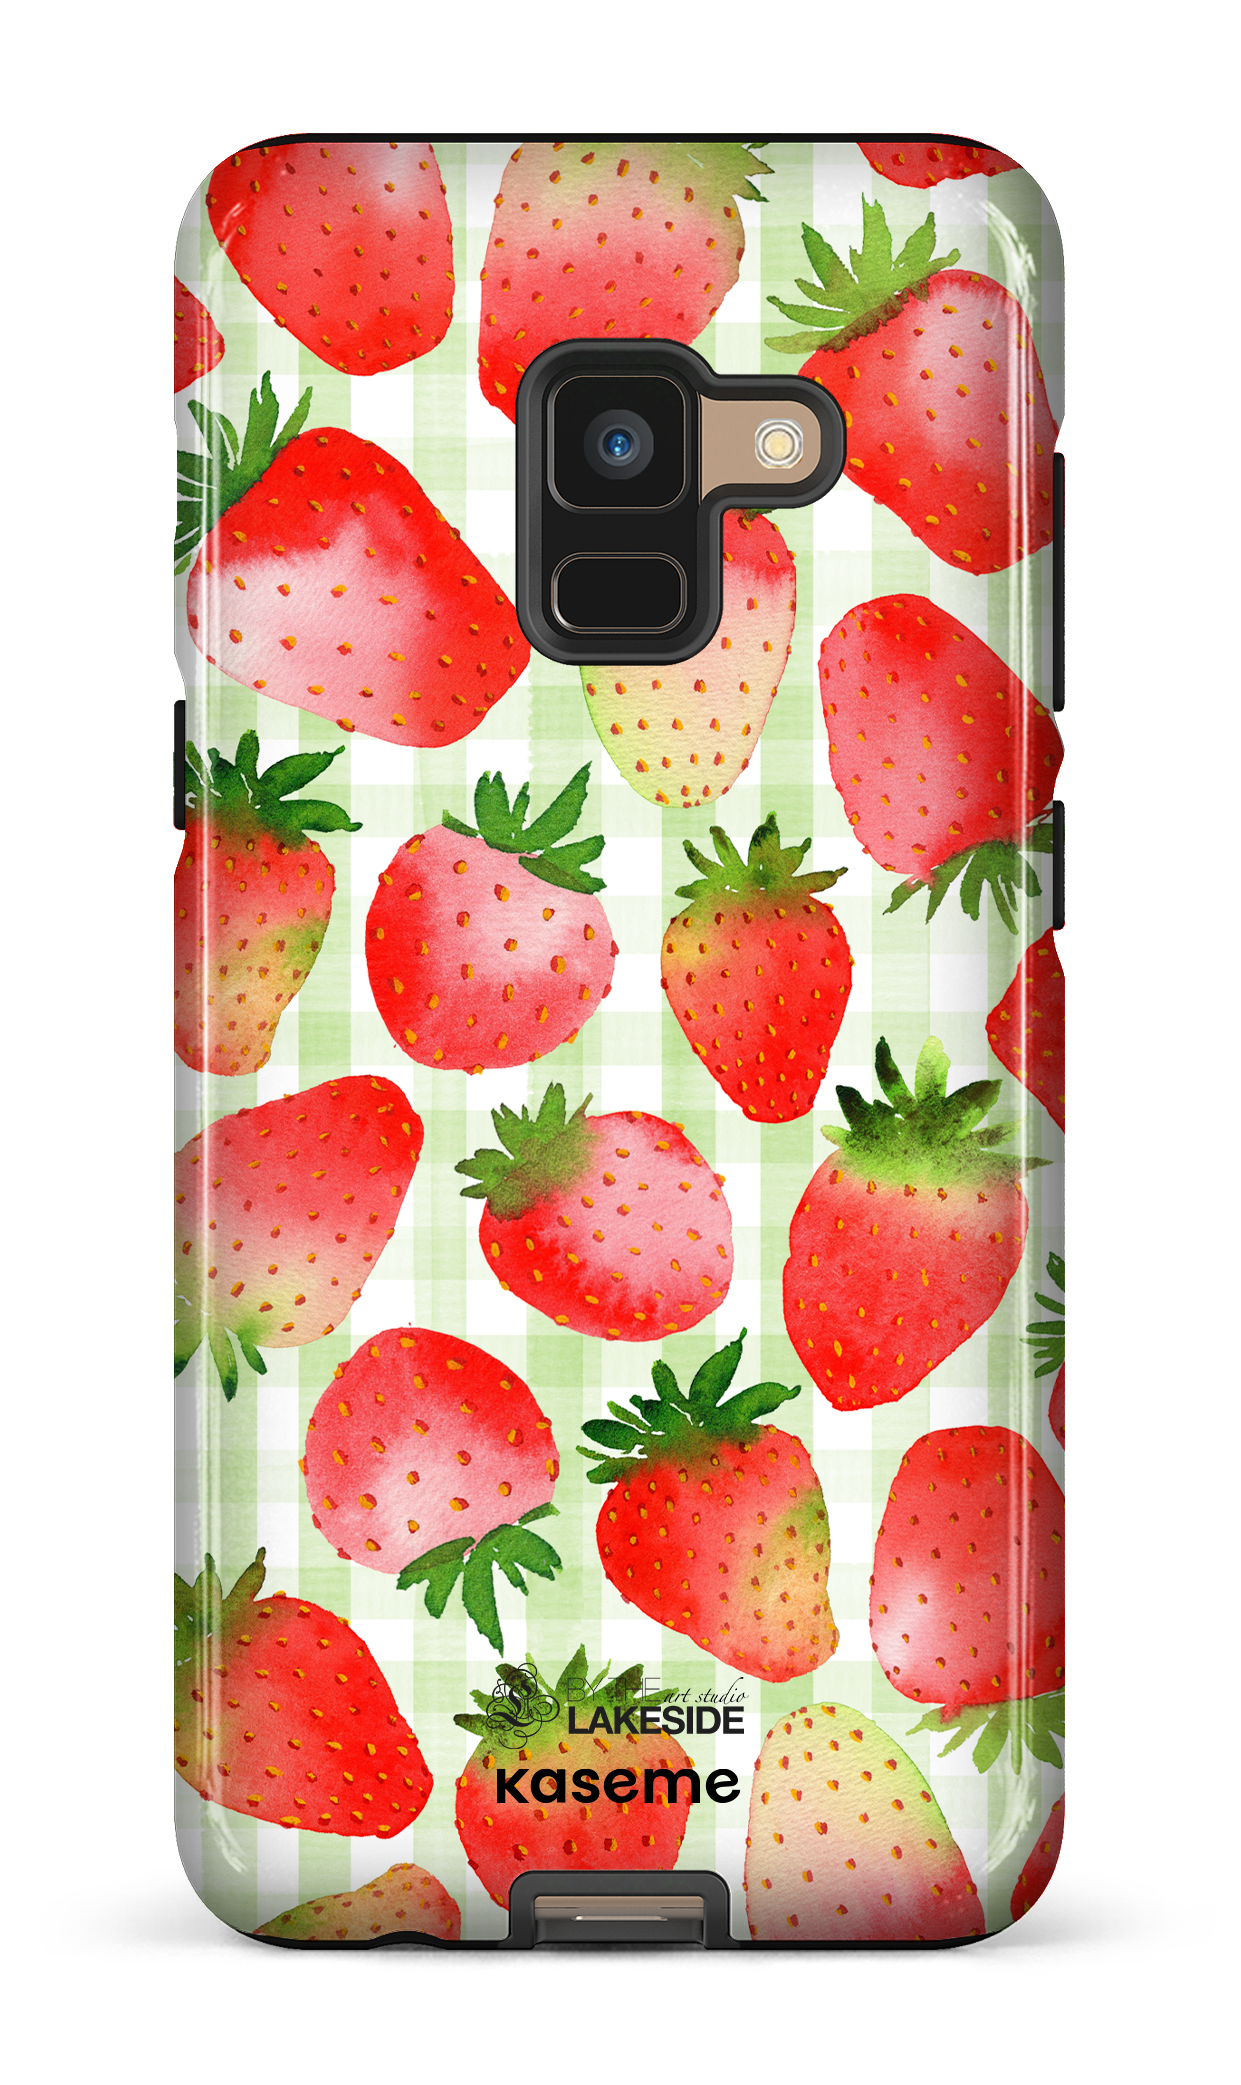 Strawberry Fields Green by Pooja Umrani - Galaxy A8